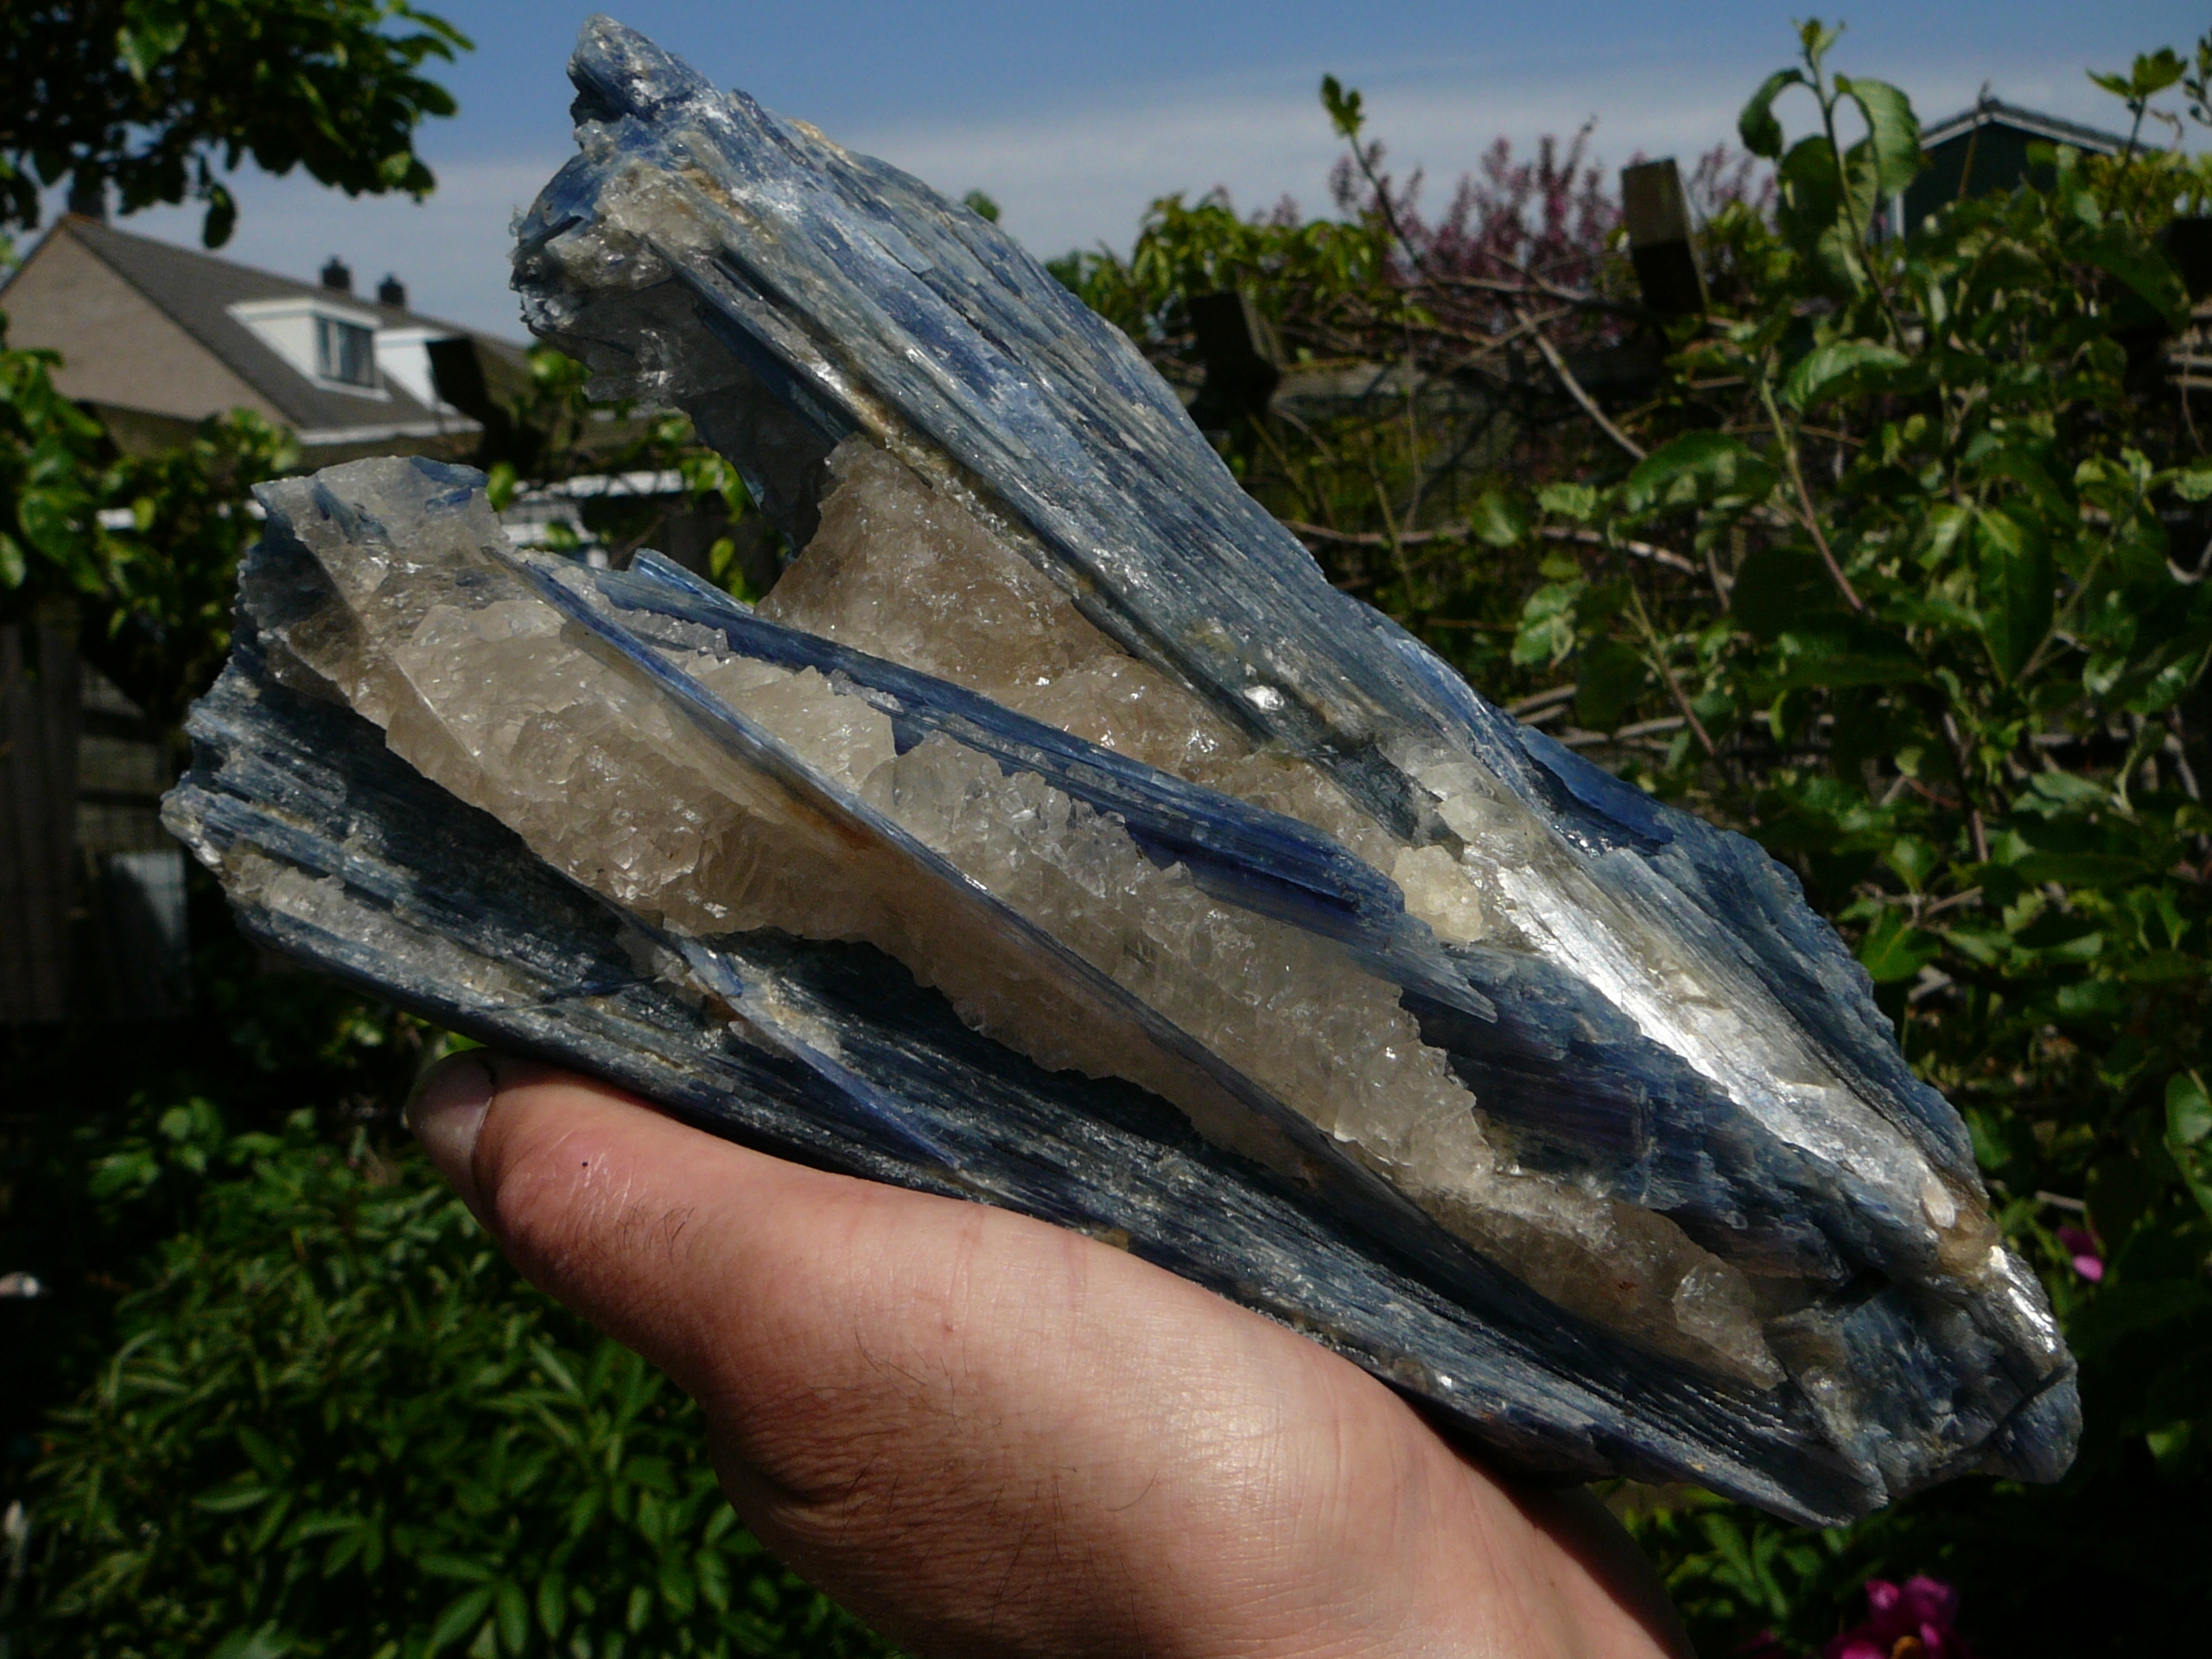 Blue kyanite crystals in a matrix of semi-transparent quartz